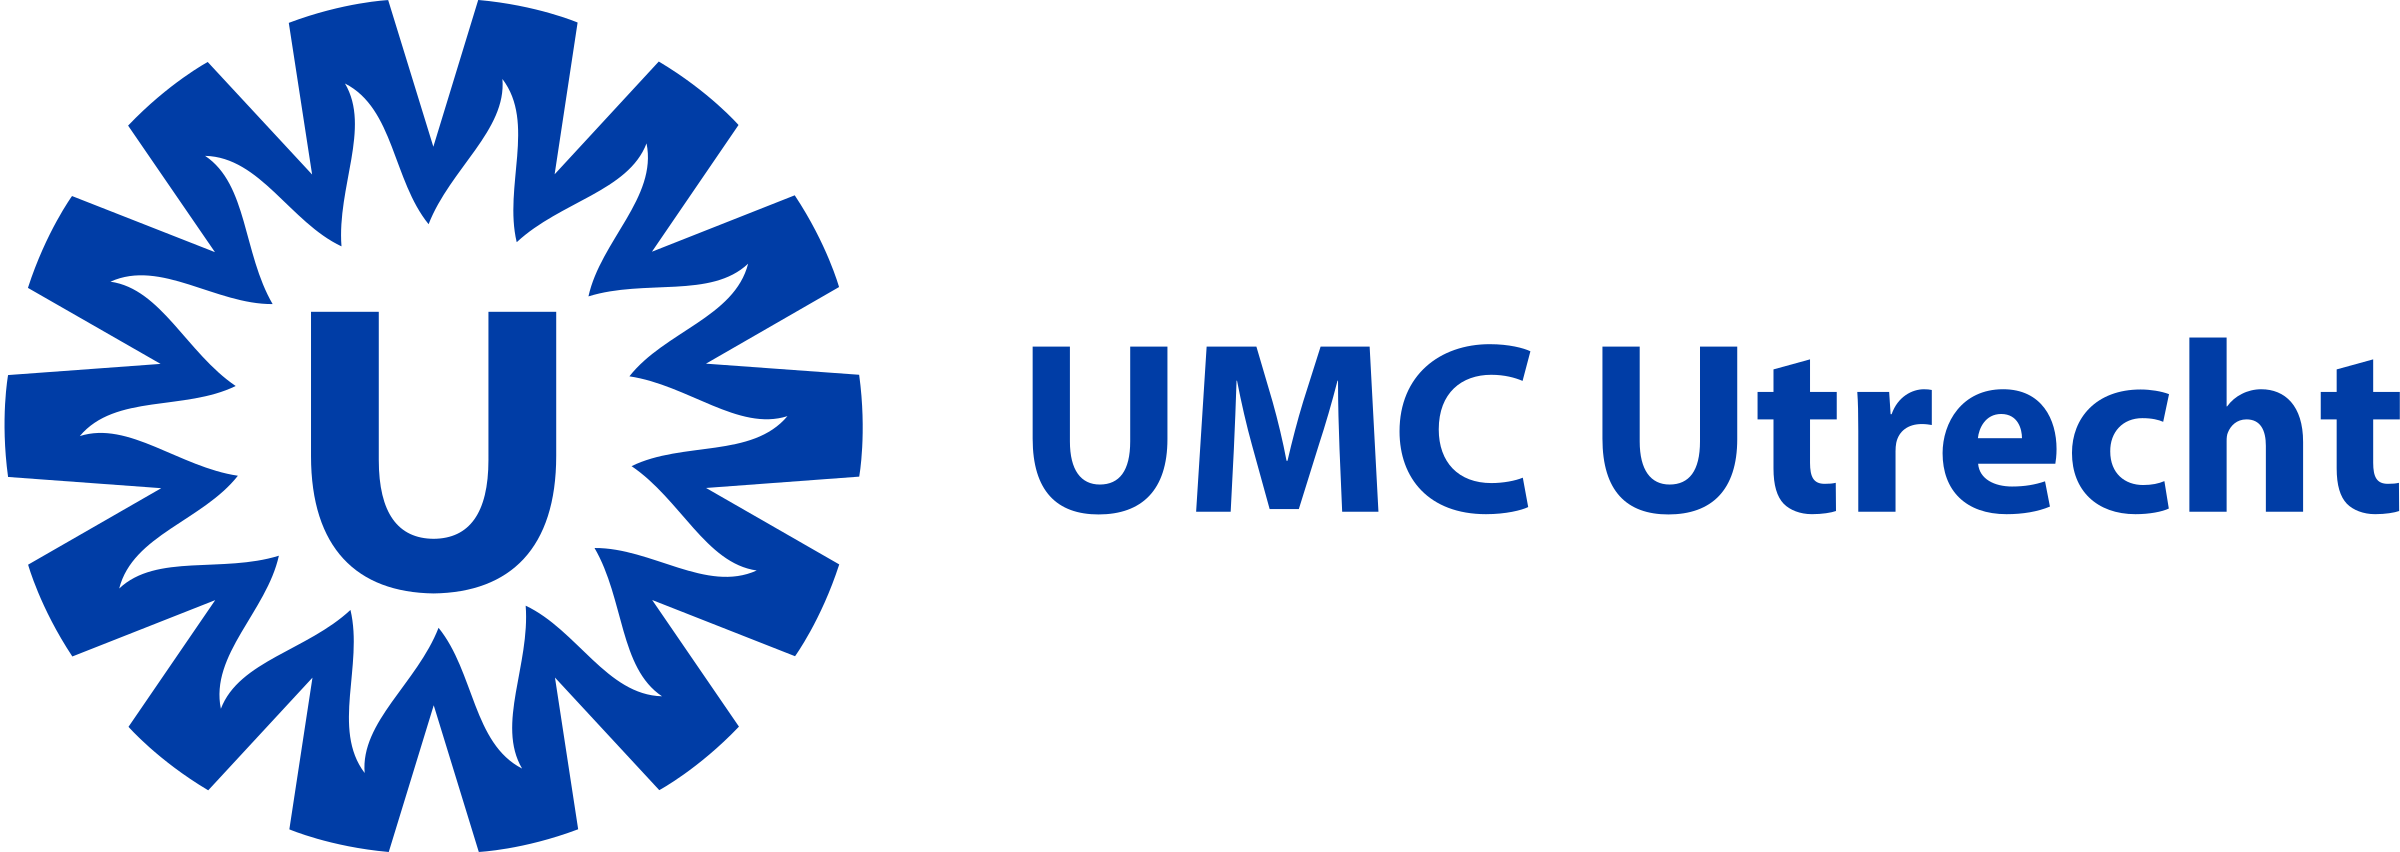 umc-utrecht-1-logo-png-transparent.png